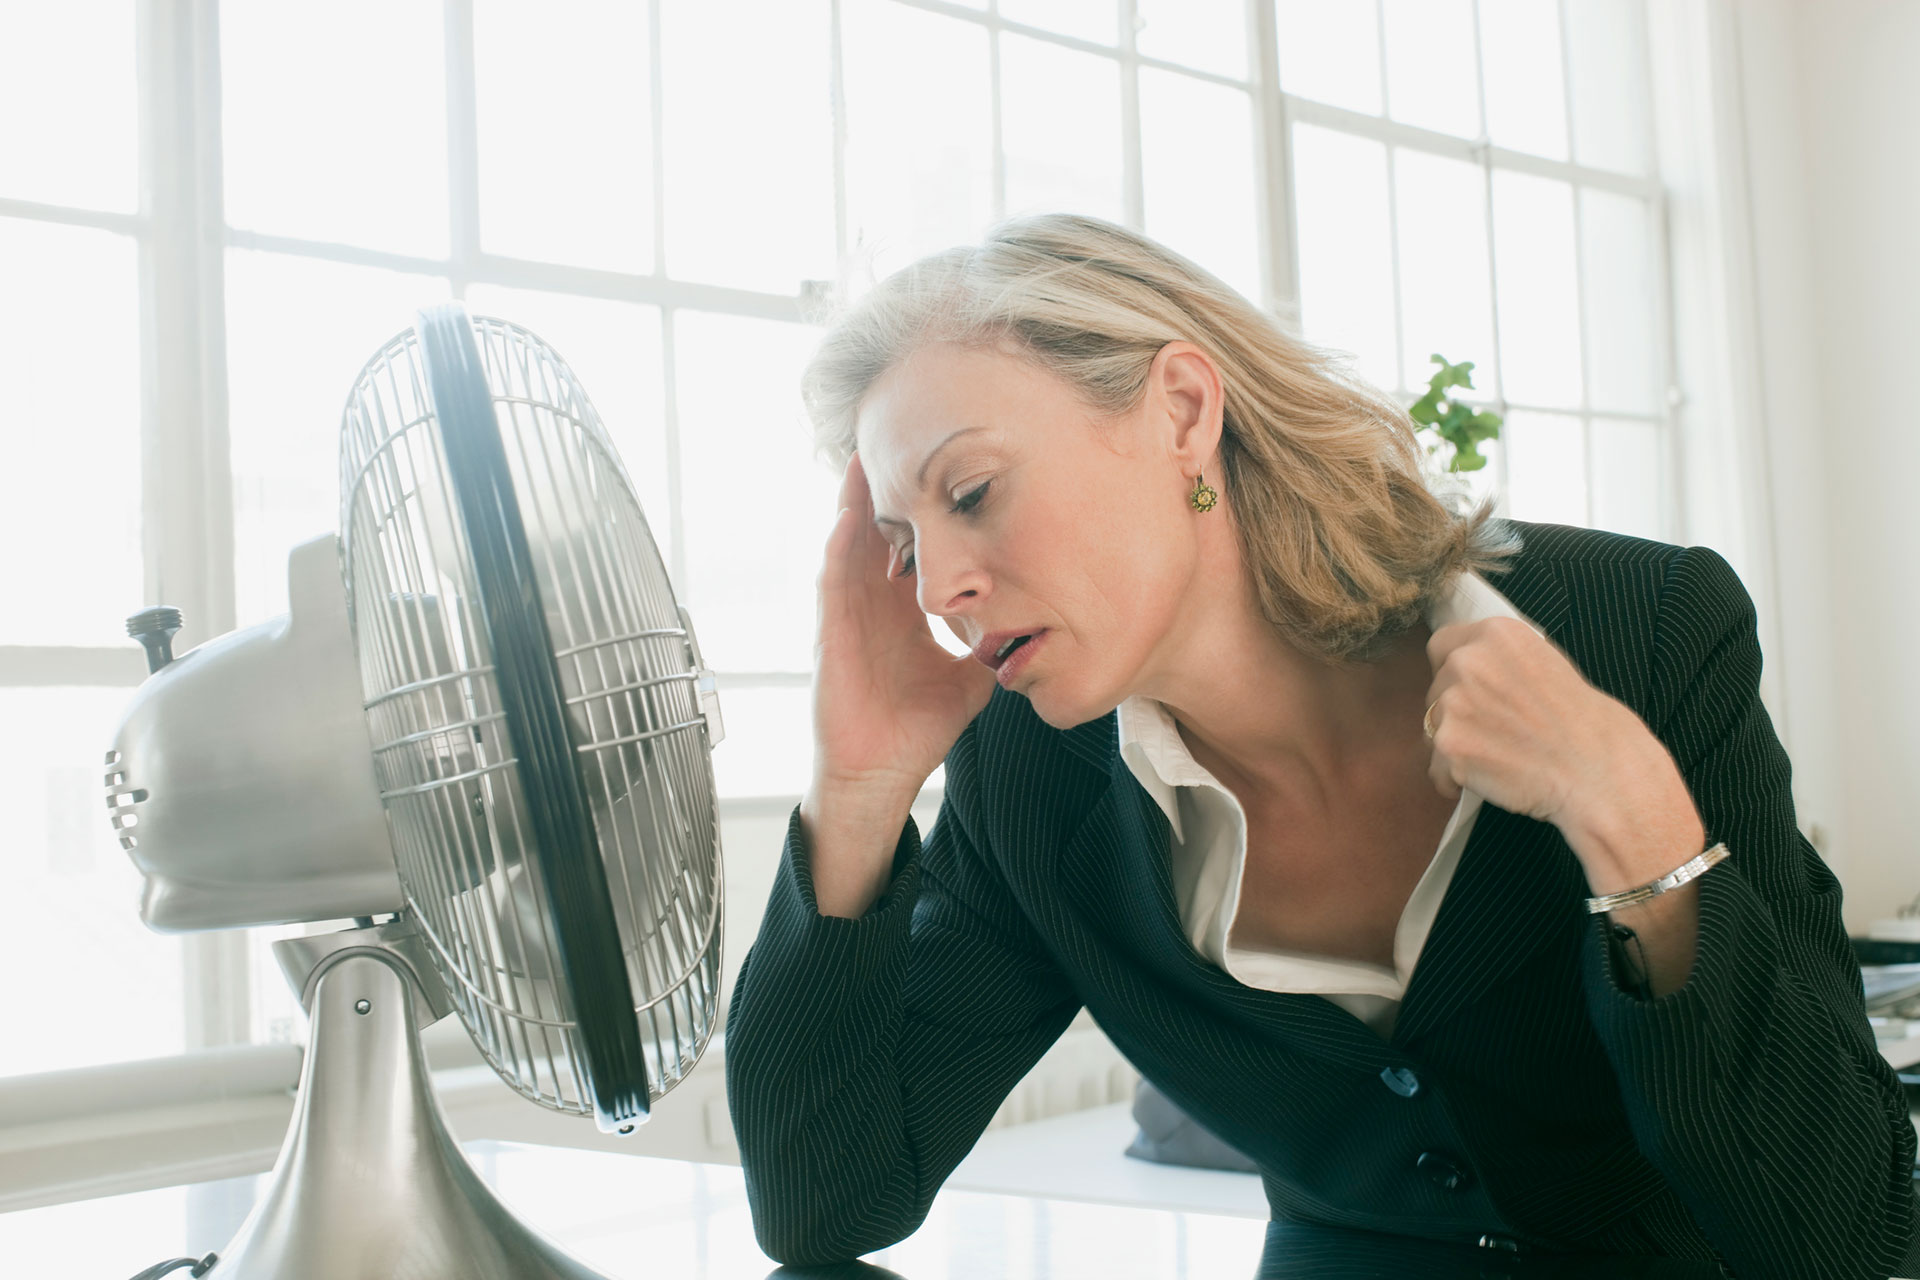 Estrés e irritabilidad son algunos de los síntomas observados por los profesionales durante la última ola de calor en Argentina (Getty)